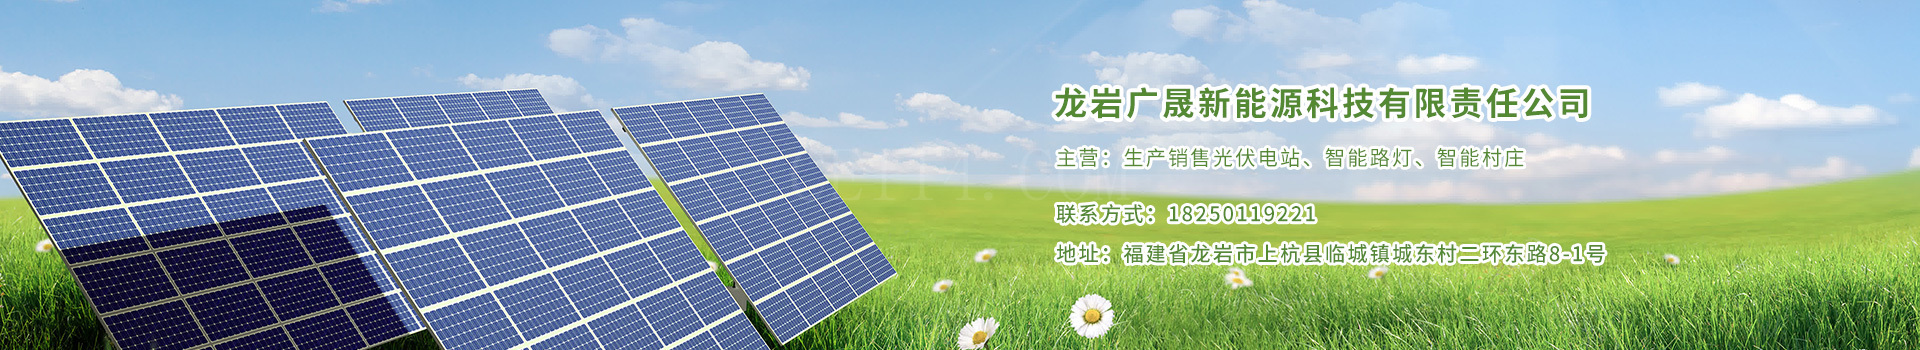 龙岩广晟新能源科技有限责任公司